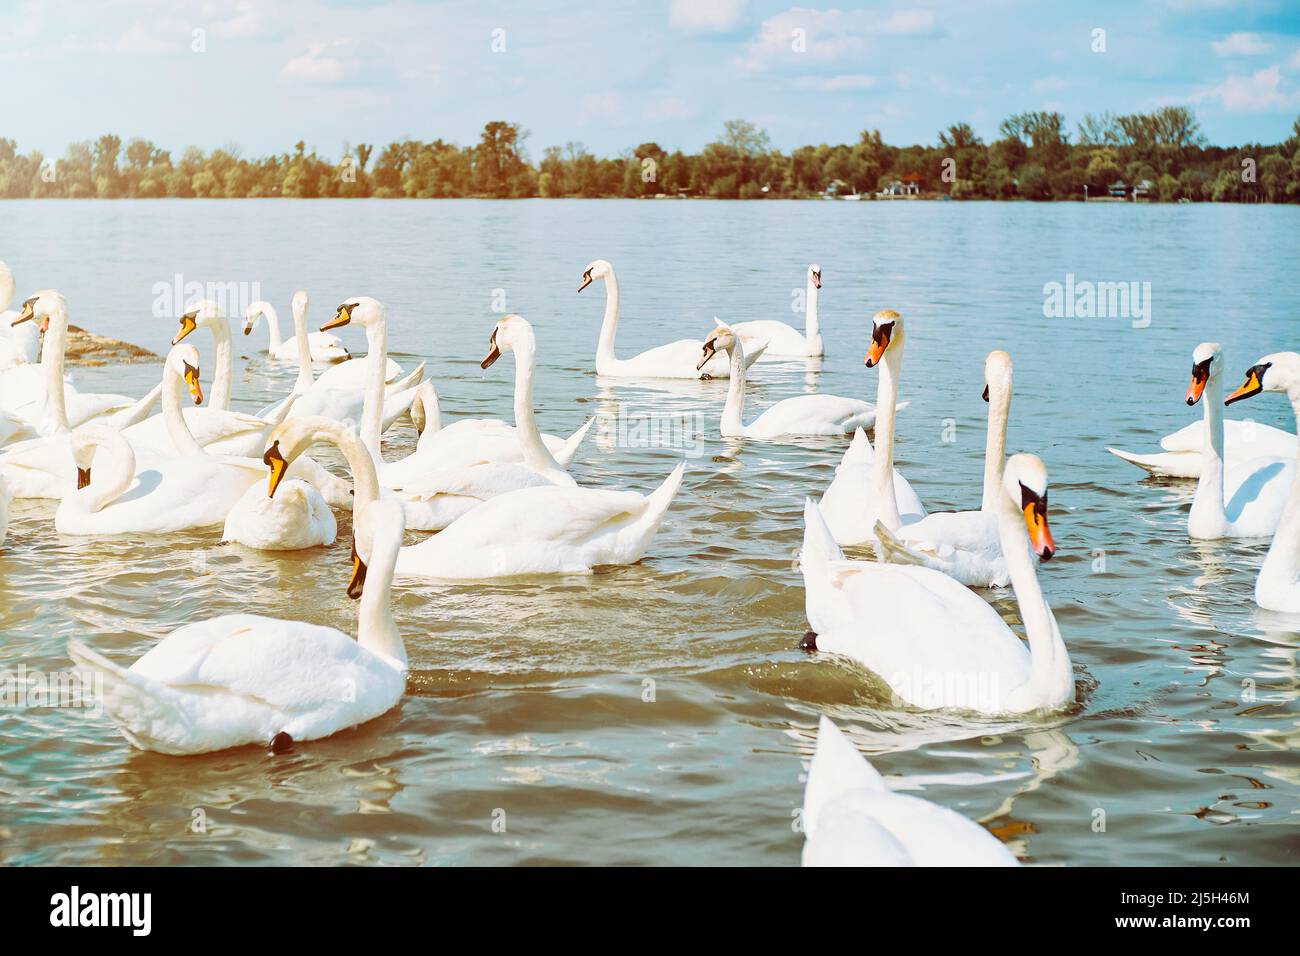 Group of white swans in Danube river in Zemun, Belgrade Stock Photo